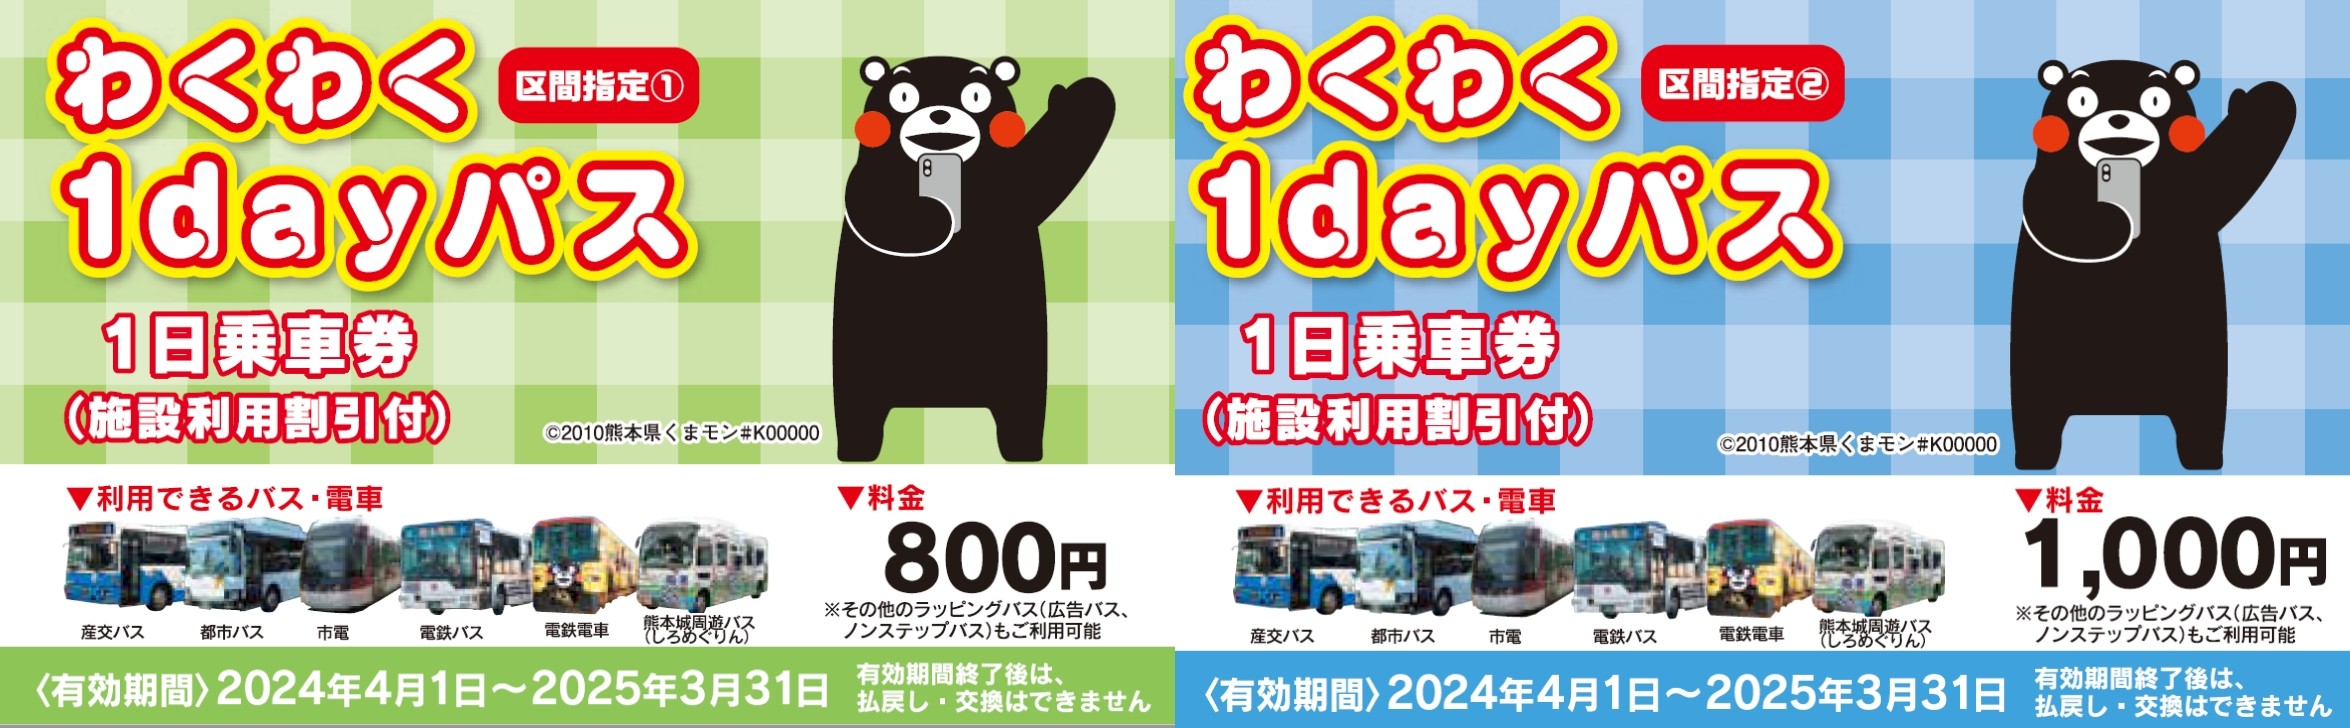 Tiket naik kereta listrik dan bus sehari penuh (Waku Waku 1day Pass)